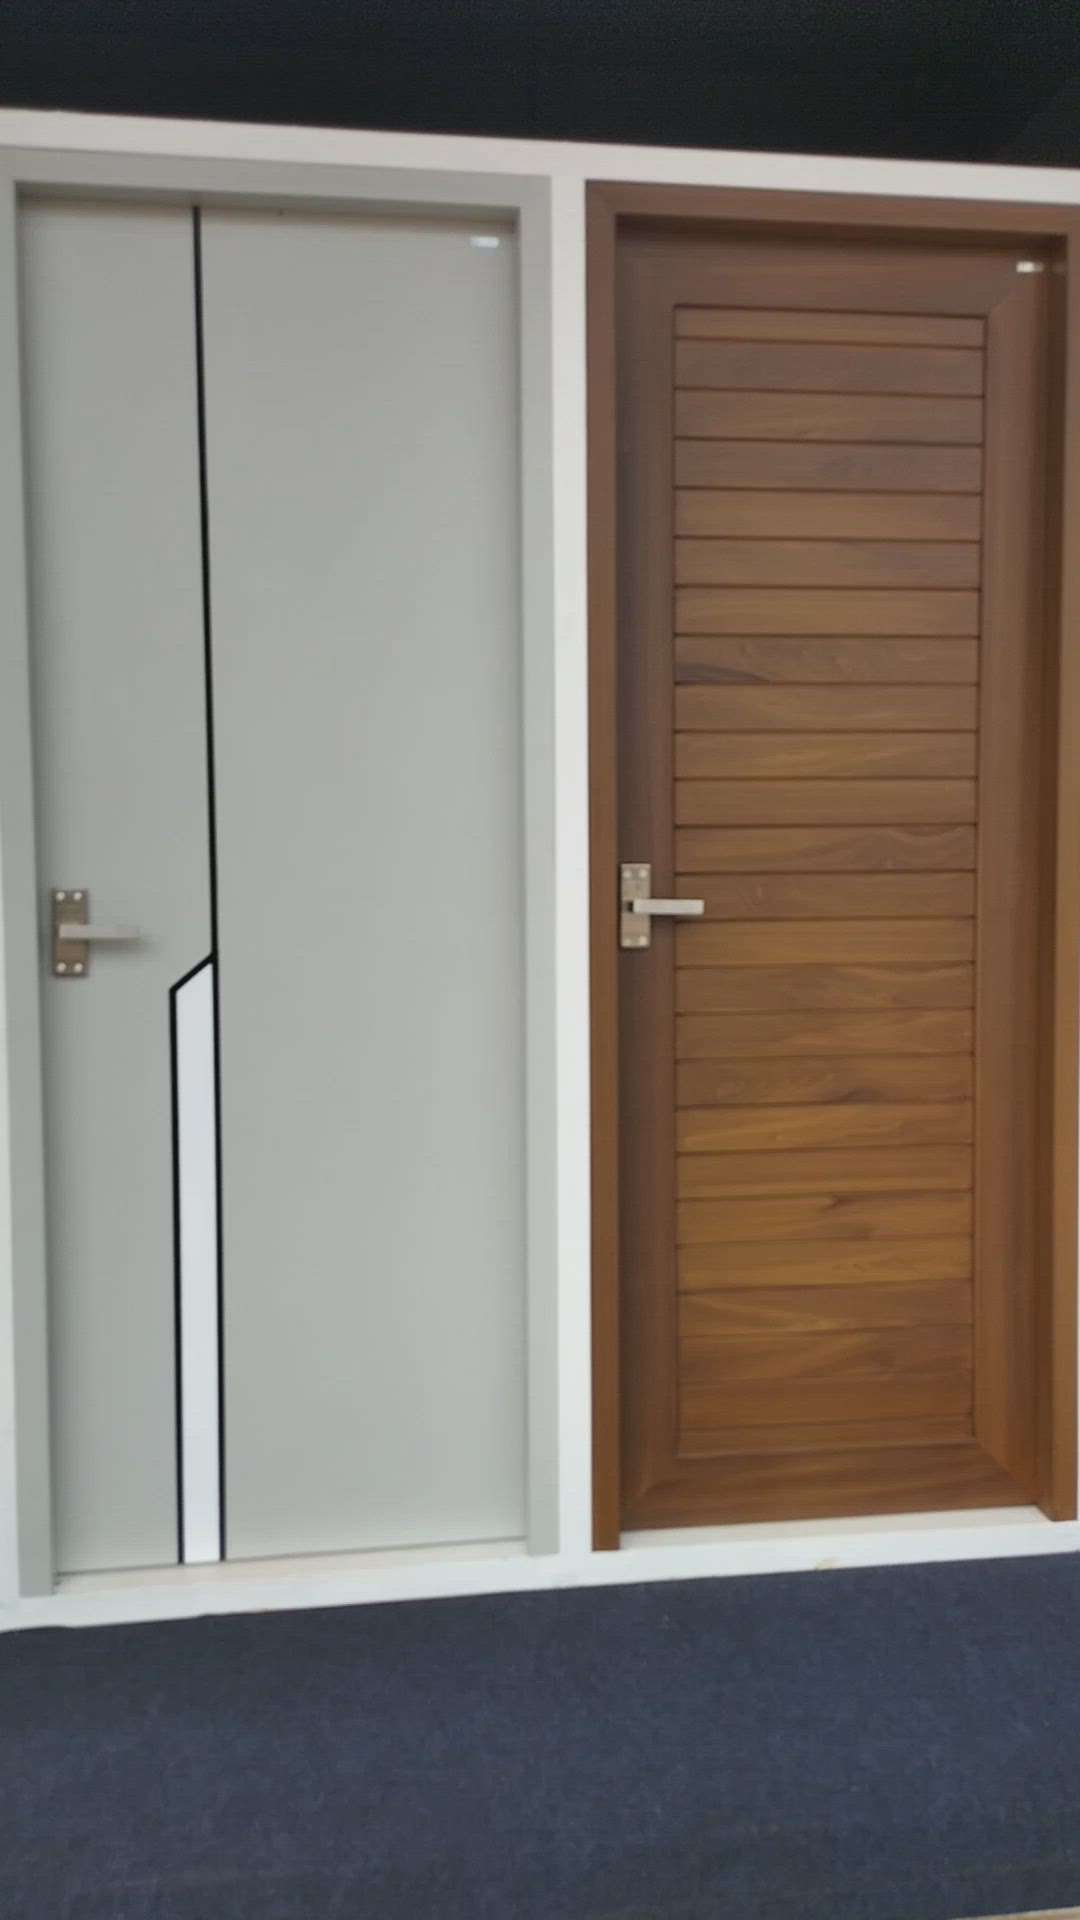 Latest Bathroom Door Designs | All Kerala Available | 9946 257 246

#FibreDoors #DoorDesigns #Door #Doors #GlassDoors